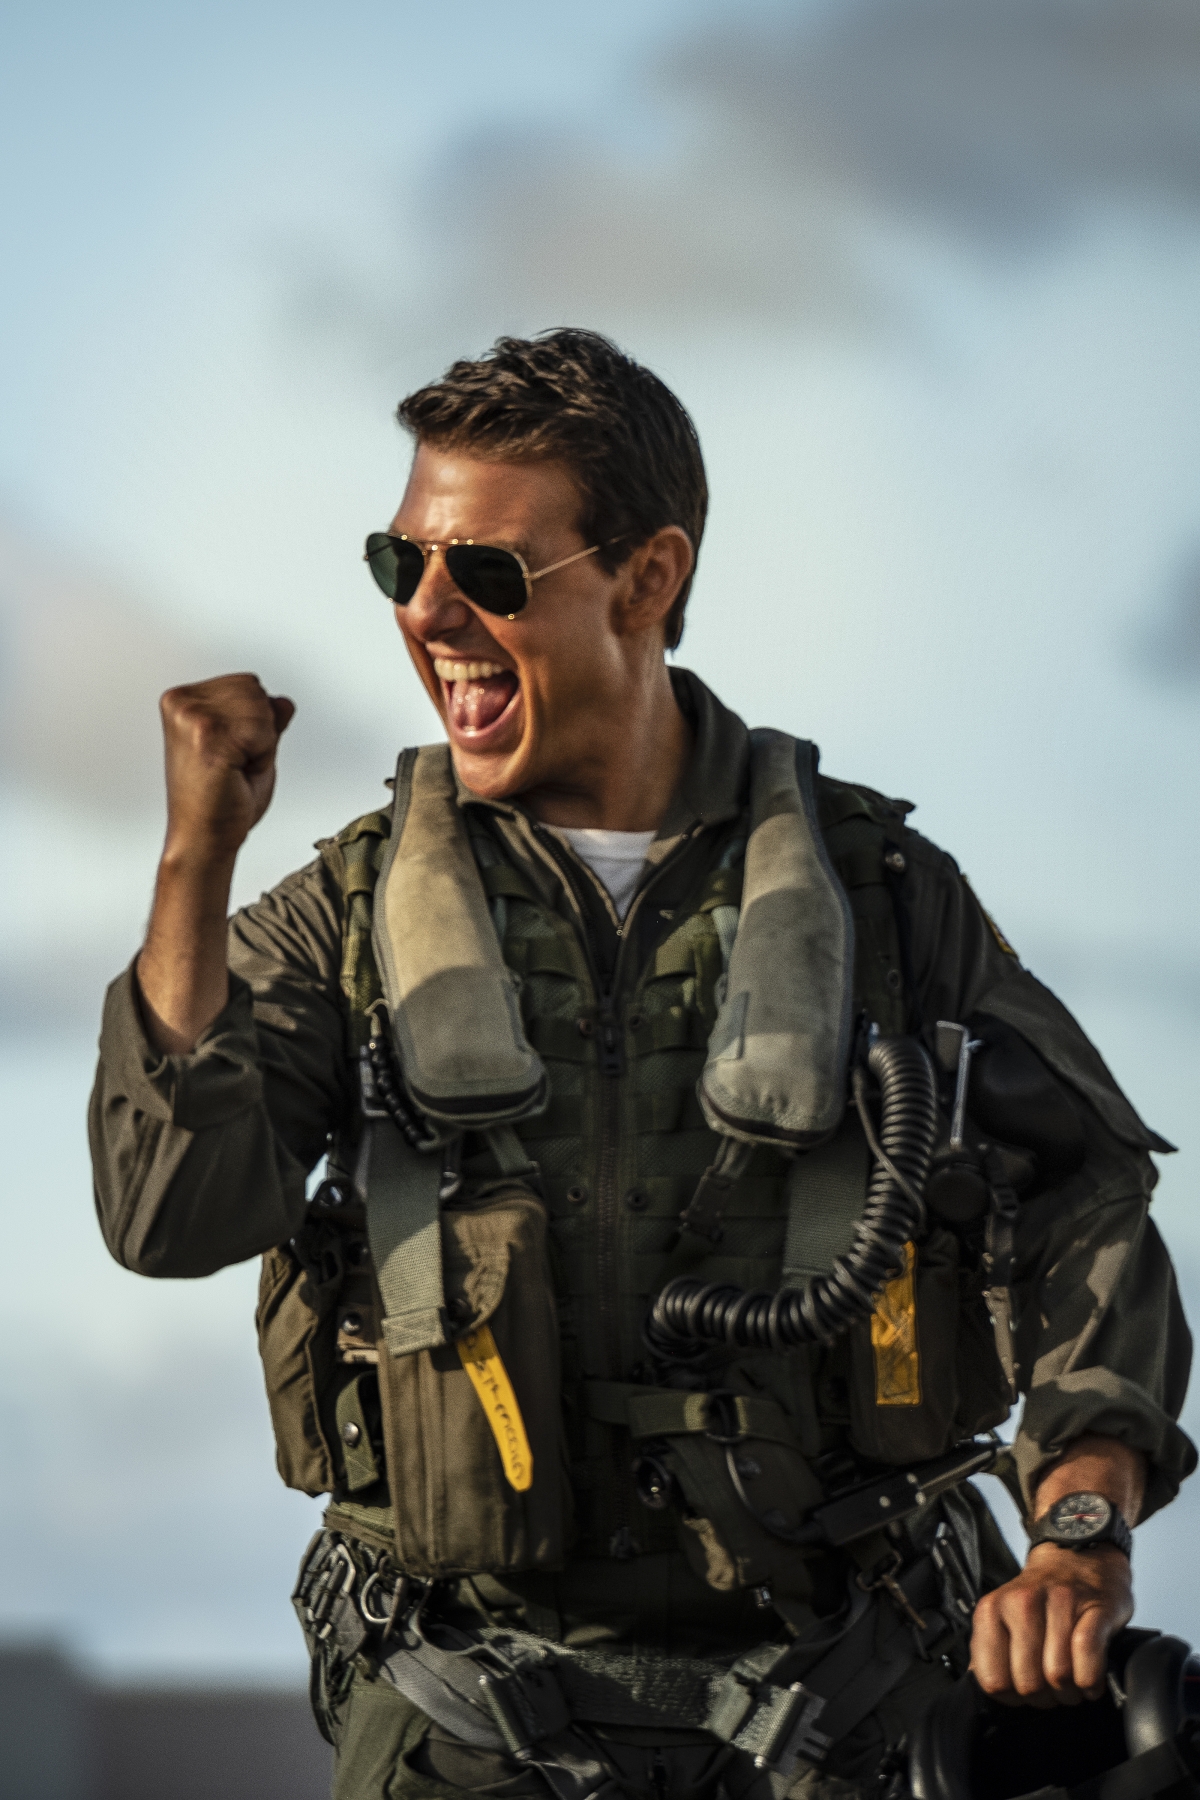 Top Gun: Maverick - Bom tấn hành động đỉnh cao, không thể bỏ lỡ của Tom Cruise - Ảnh 2.